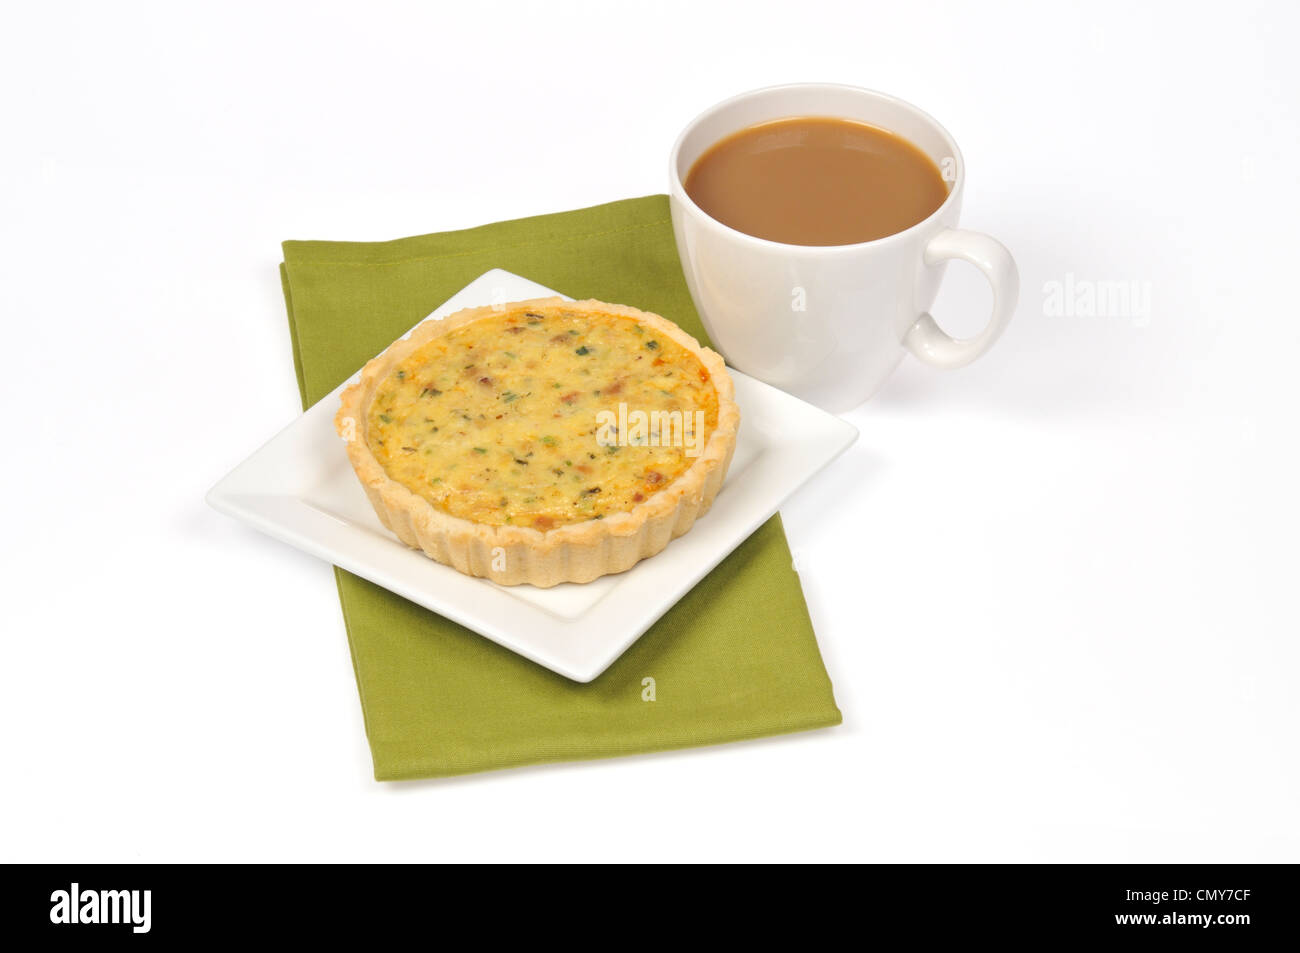 Une quiche au fromage et jambon cuit avec une tasse de café sur fond blanc, cut out Banque D'Images